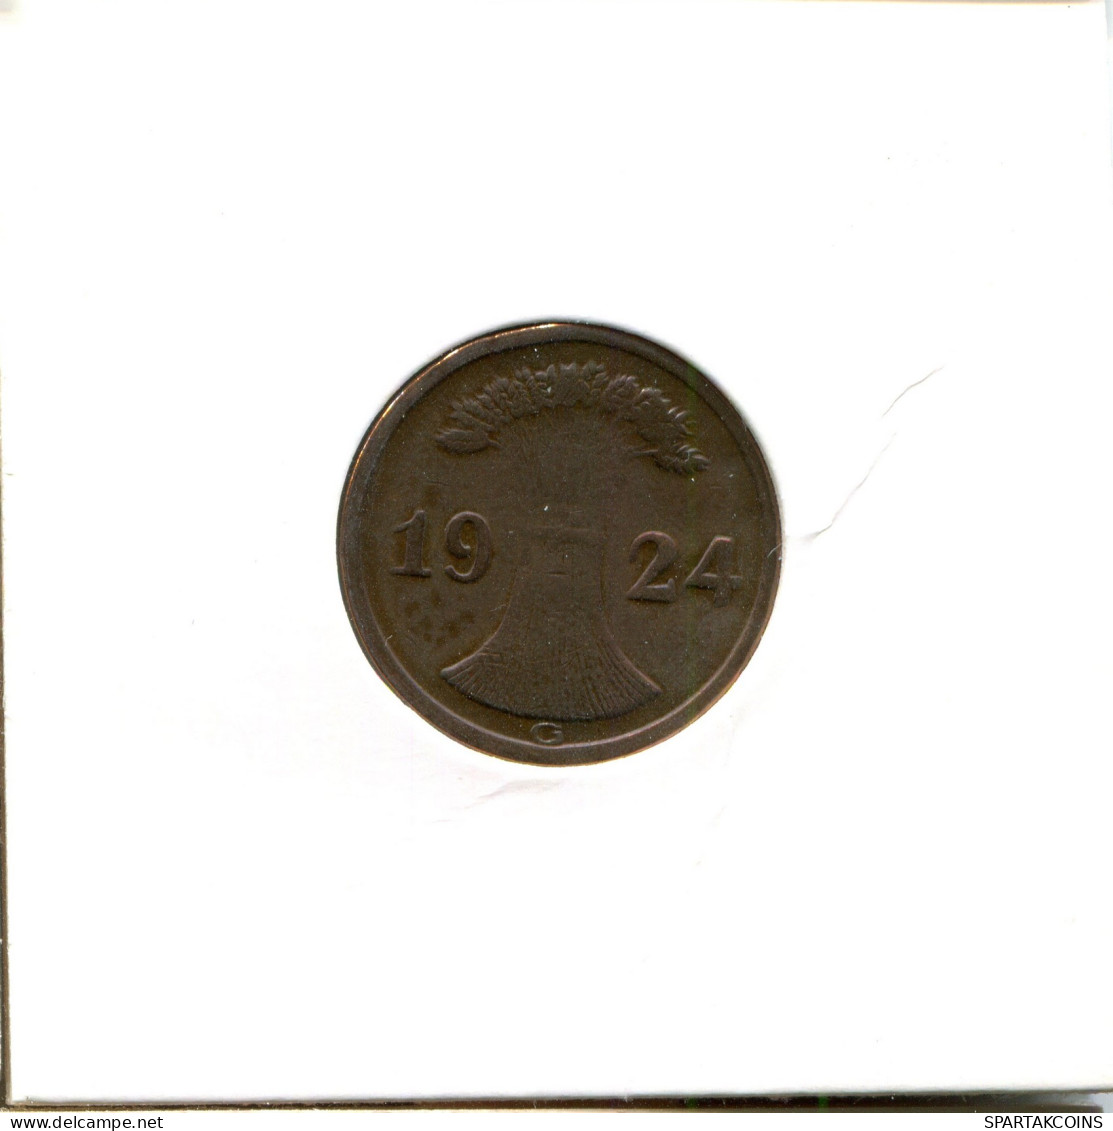 2 RENTENPFENNIG 1924 G ALEMANIA Moneda GERMANY #DA471.2.E - 2 Rentenpfennig & 2 Reichspfennig